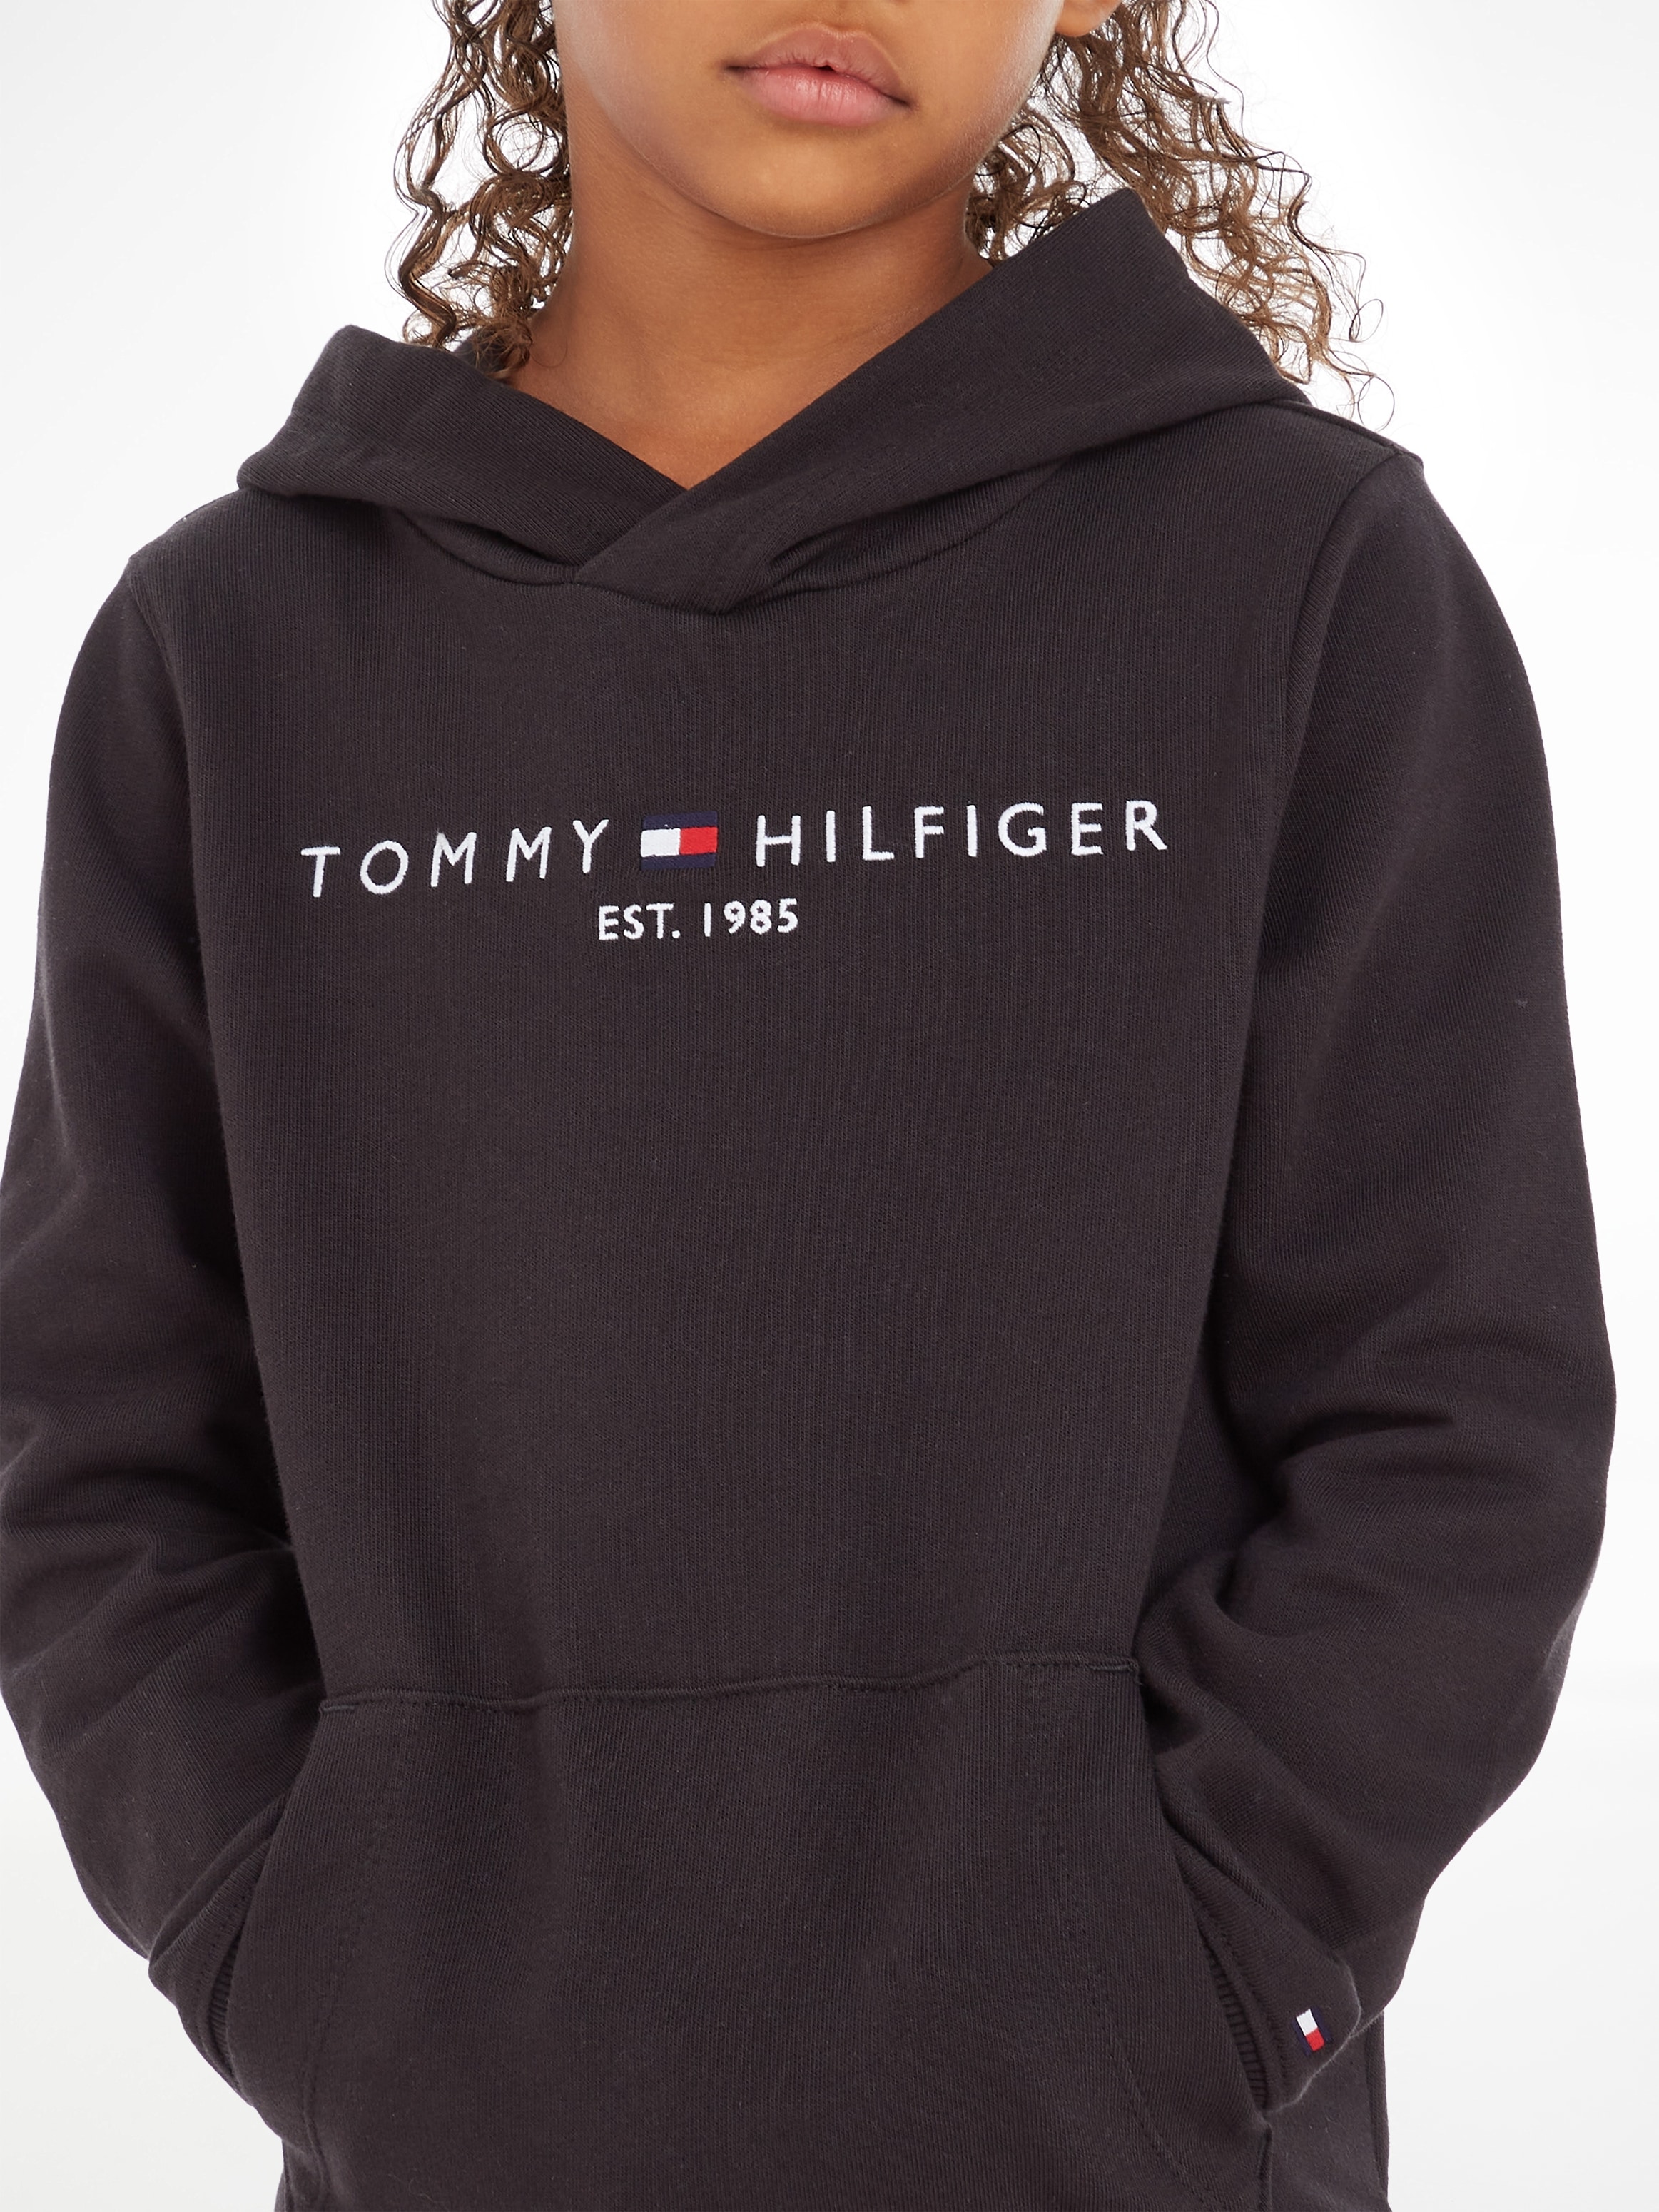 BAUR und »ESSENTIAL Jungen Kapuzensweatshirt für Tommy Mädchen online Hilfiger | kaufen HOODIE«,